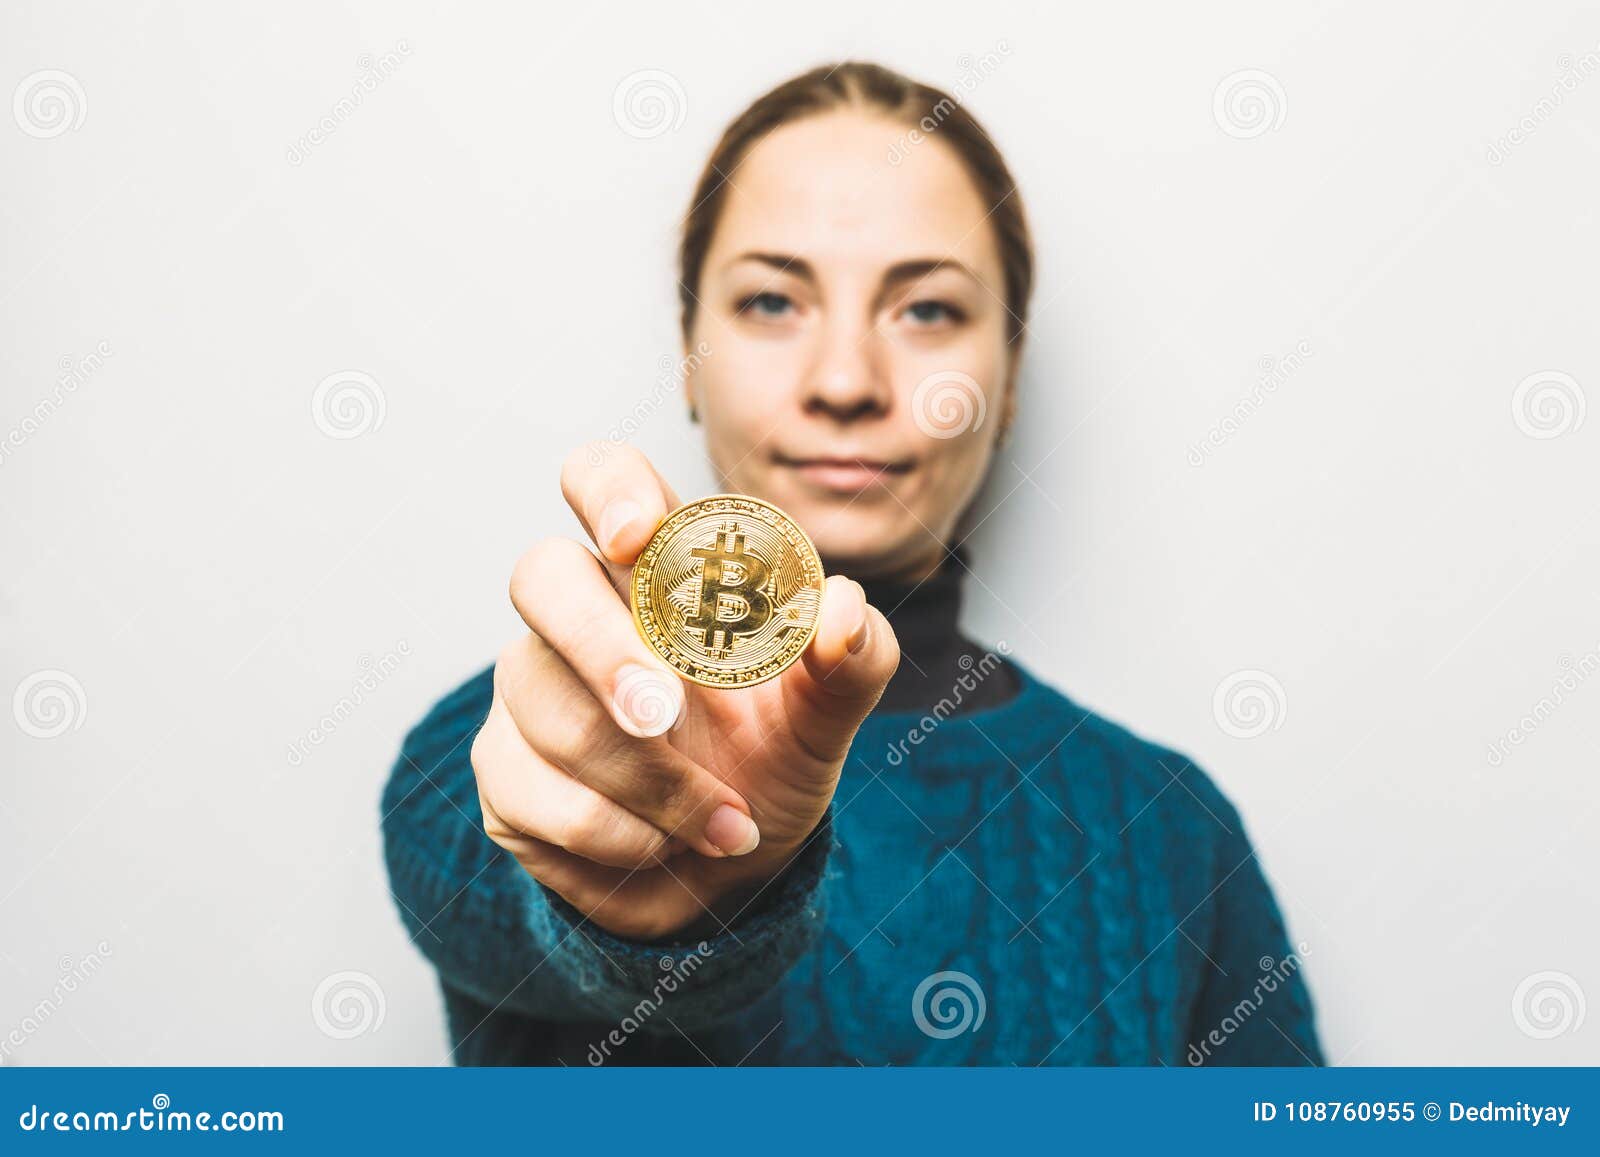 girl crypto coin